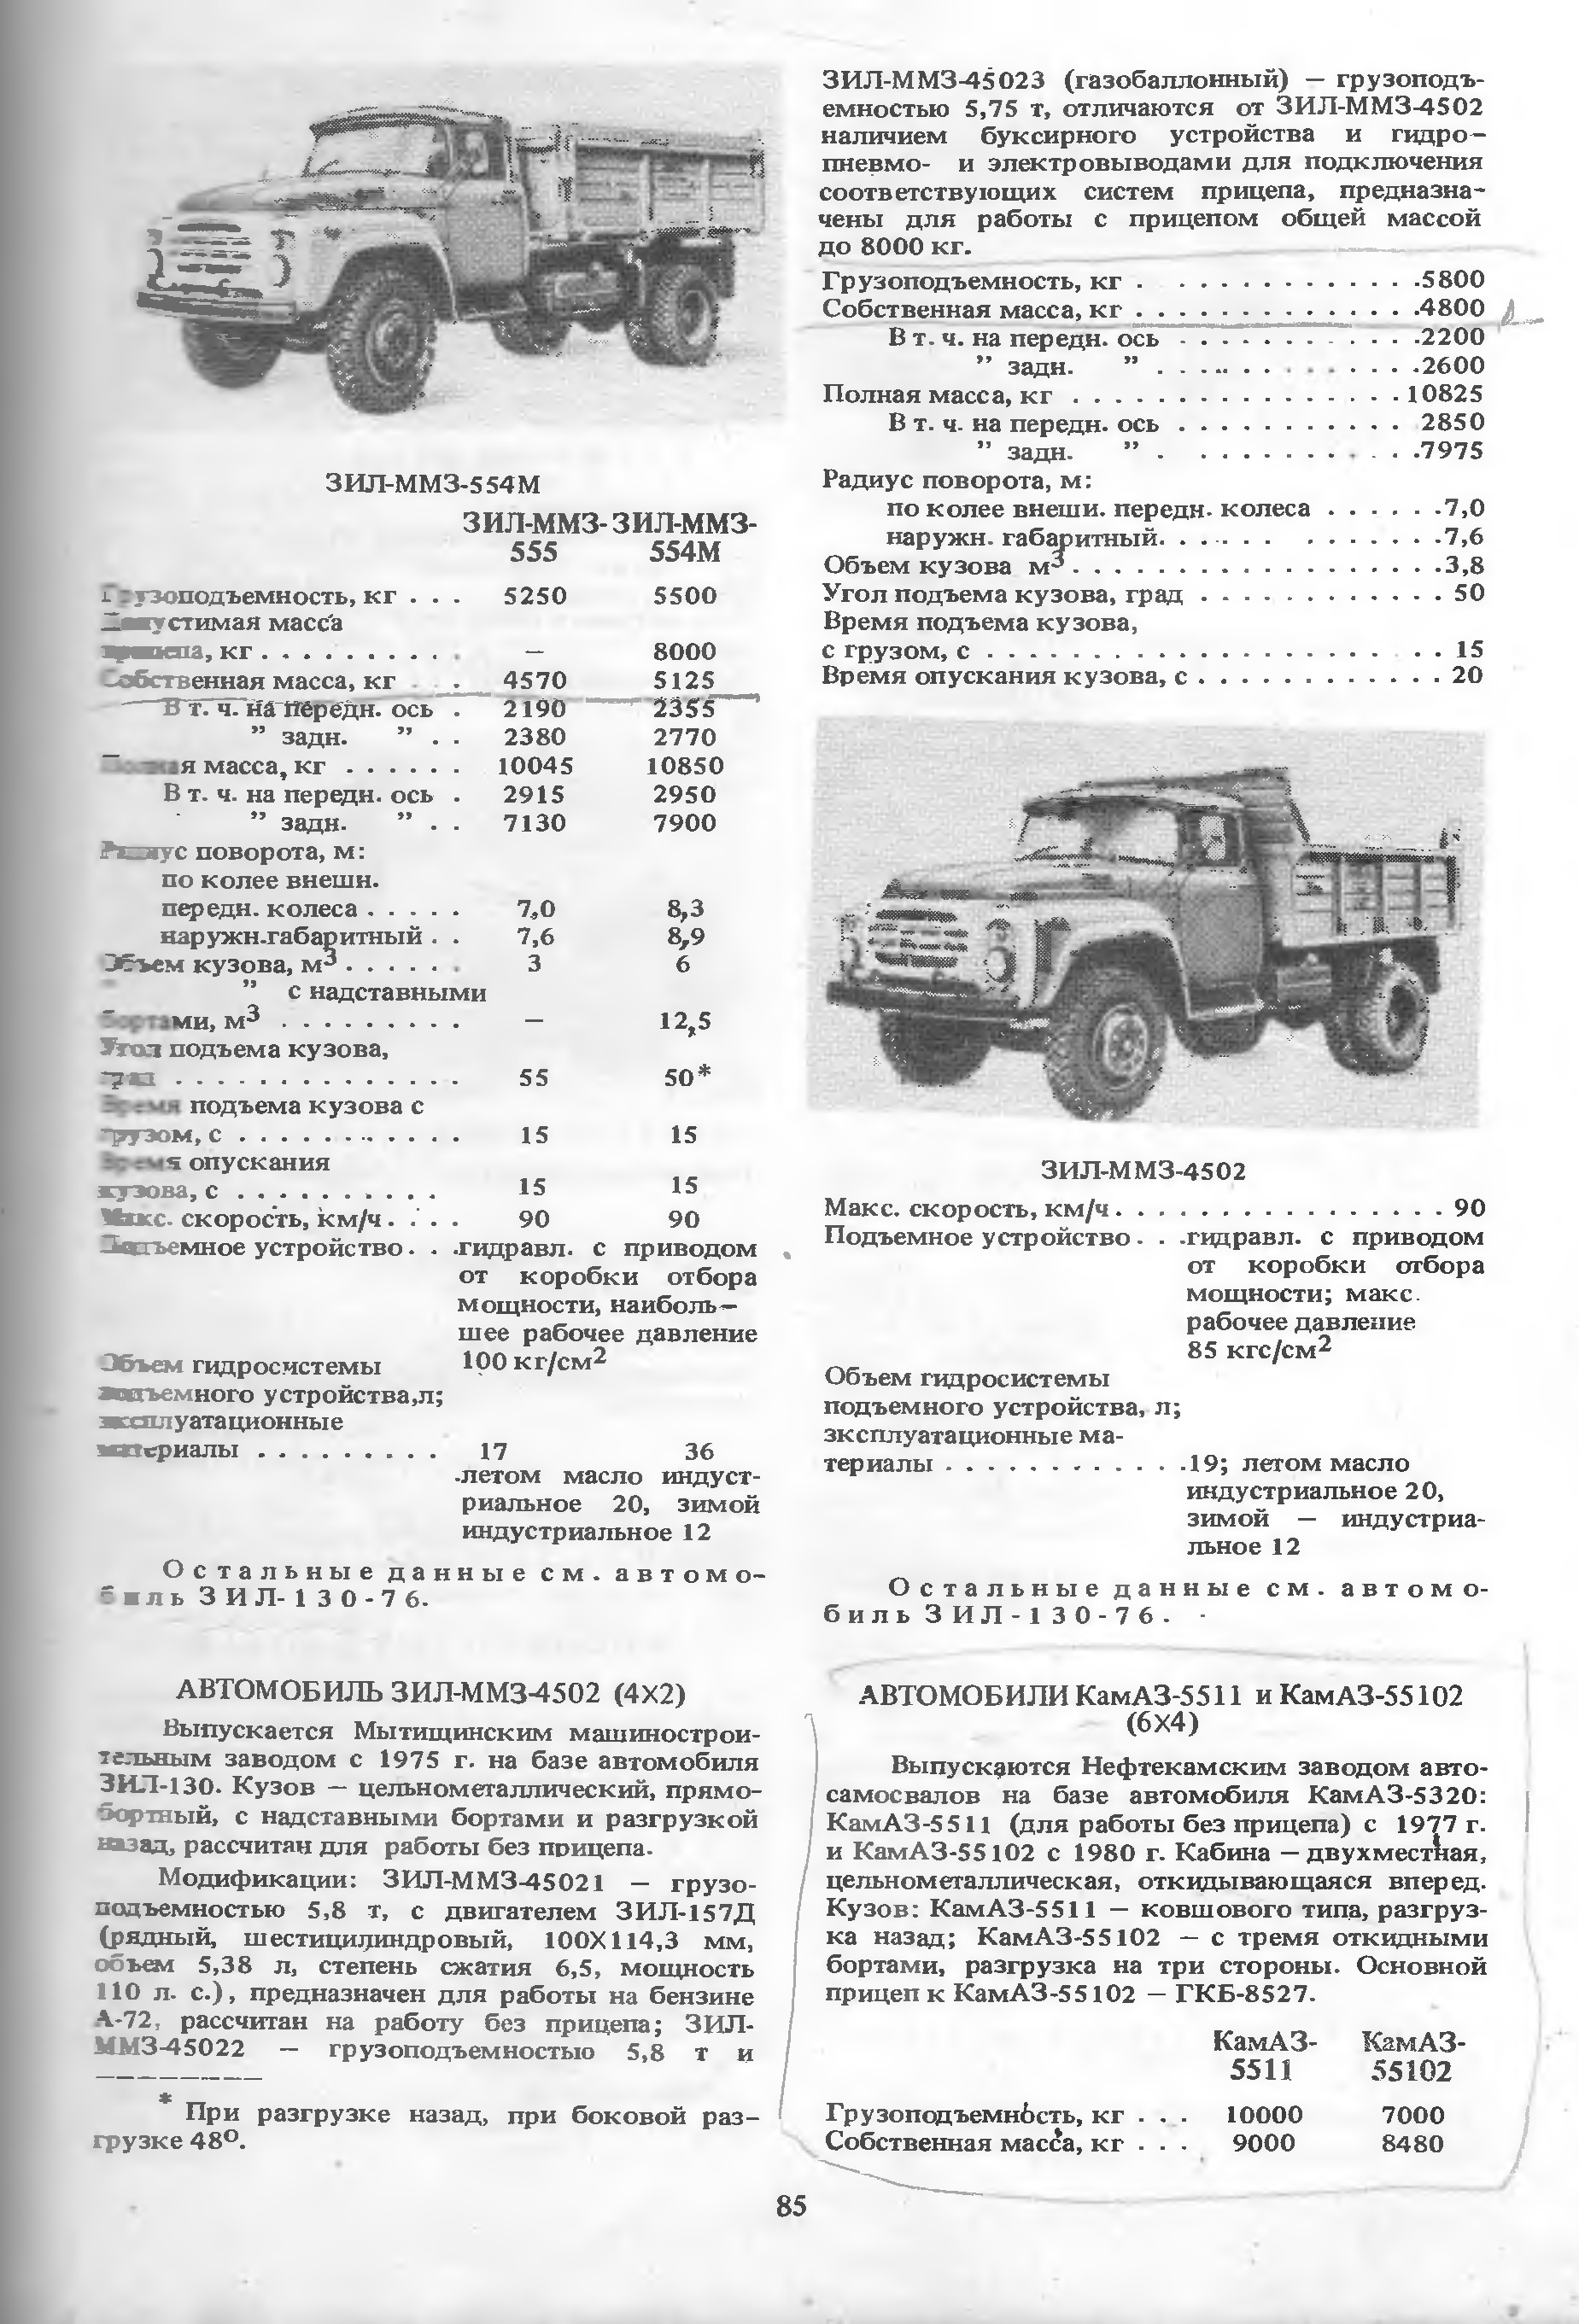 Топ-2 модификации грузовых автомобилей на базе самосвала зил-ммз-4502